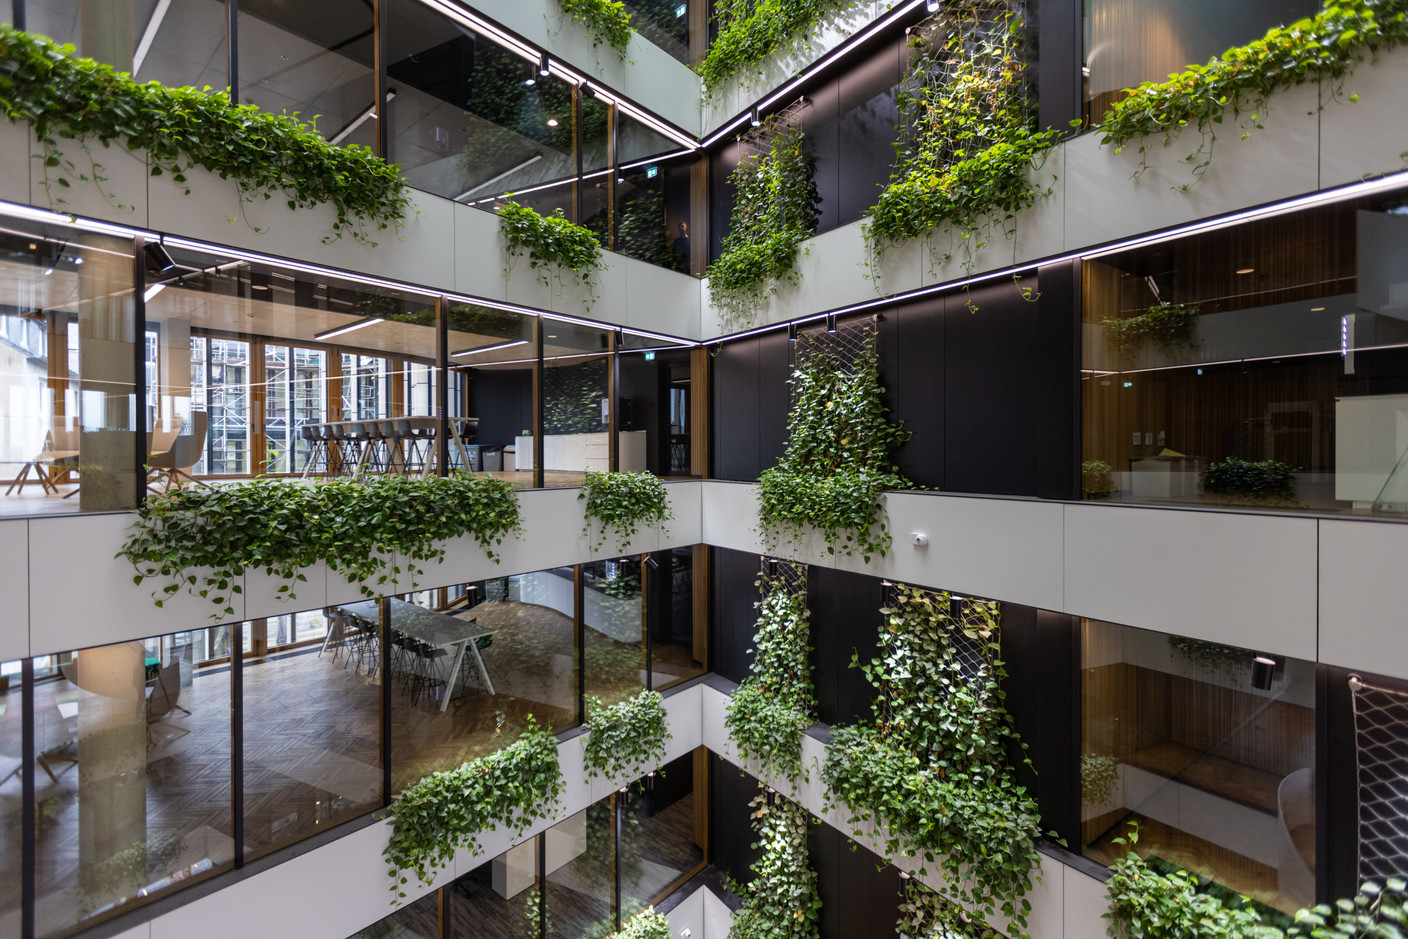 Aux différents étages, des plantations grimpantes sont installées sur les façades intérieures. (Photo: Romain Gamba/Maison Moderne)